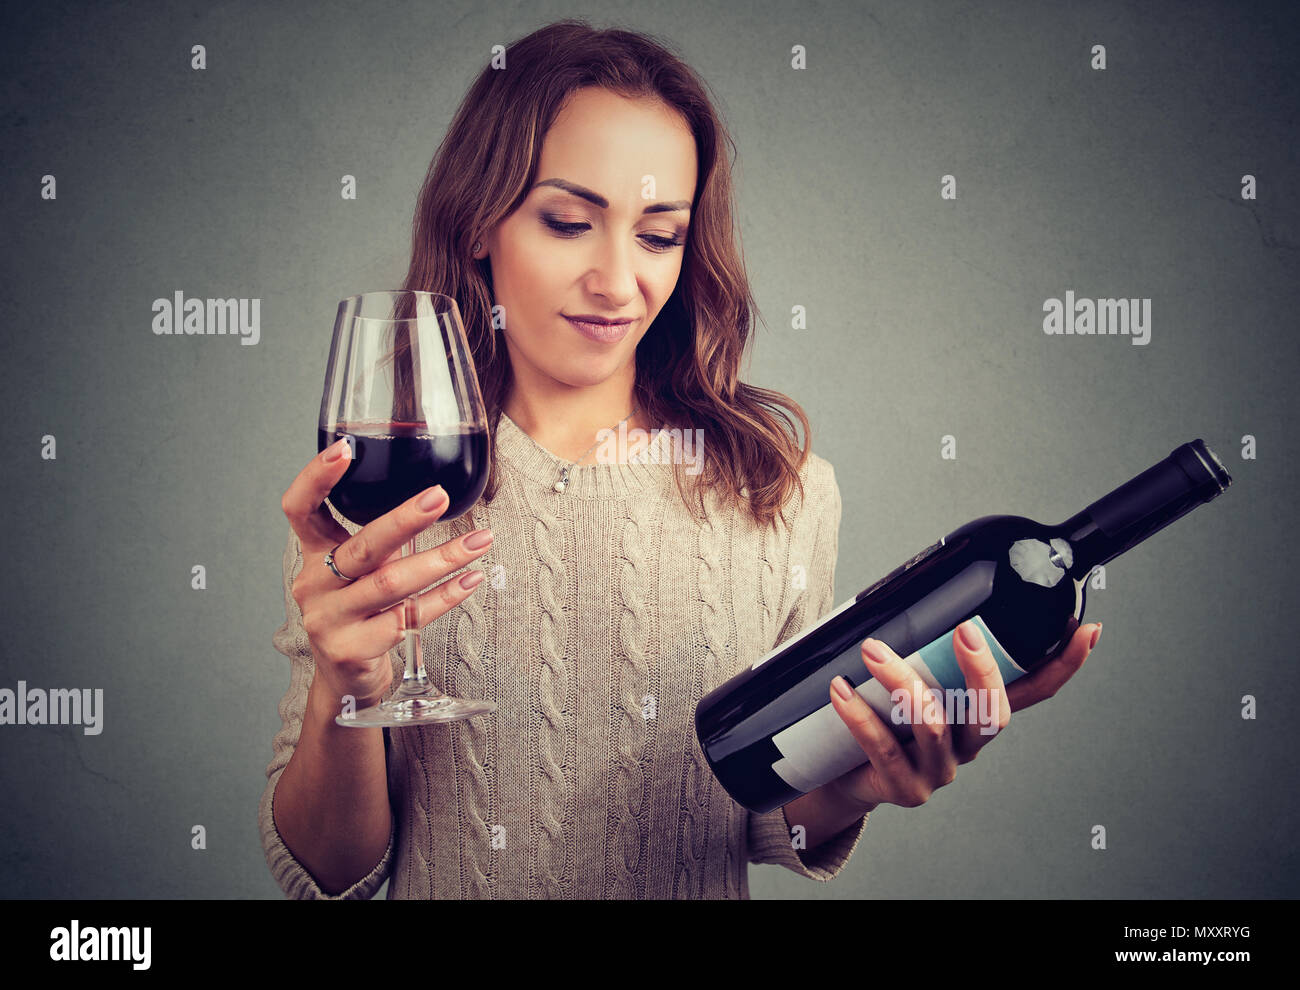 Ragazza giovane con la bottiglia e bicchiere di vino rosso cercando scontroso a causa del cattivo gusto Foto Stock